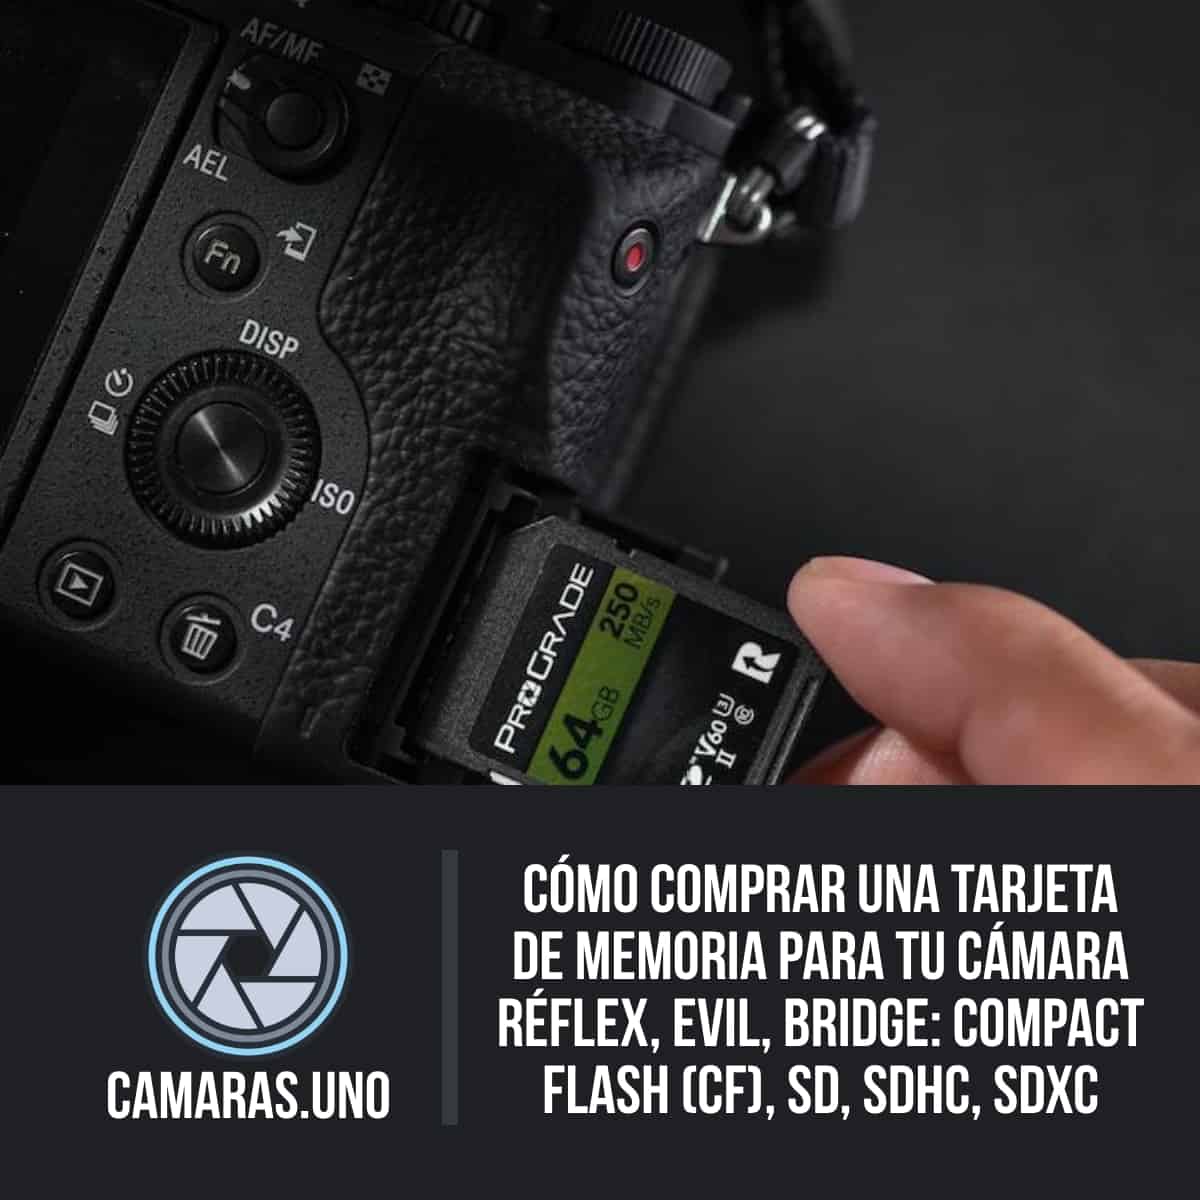 Cómo comprar una tarjeta de memoria para tu cámara réflex, EVIL, Bridge: Compact Flash (CF), SD, SDHC, SDXC